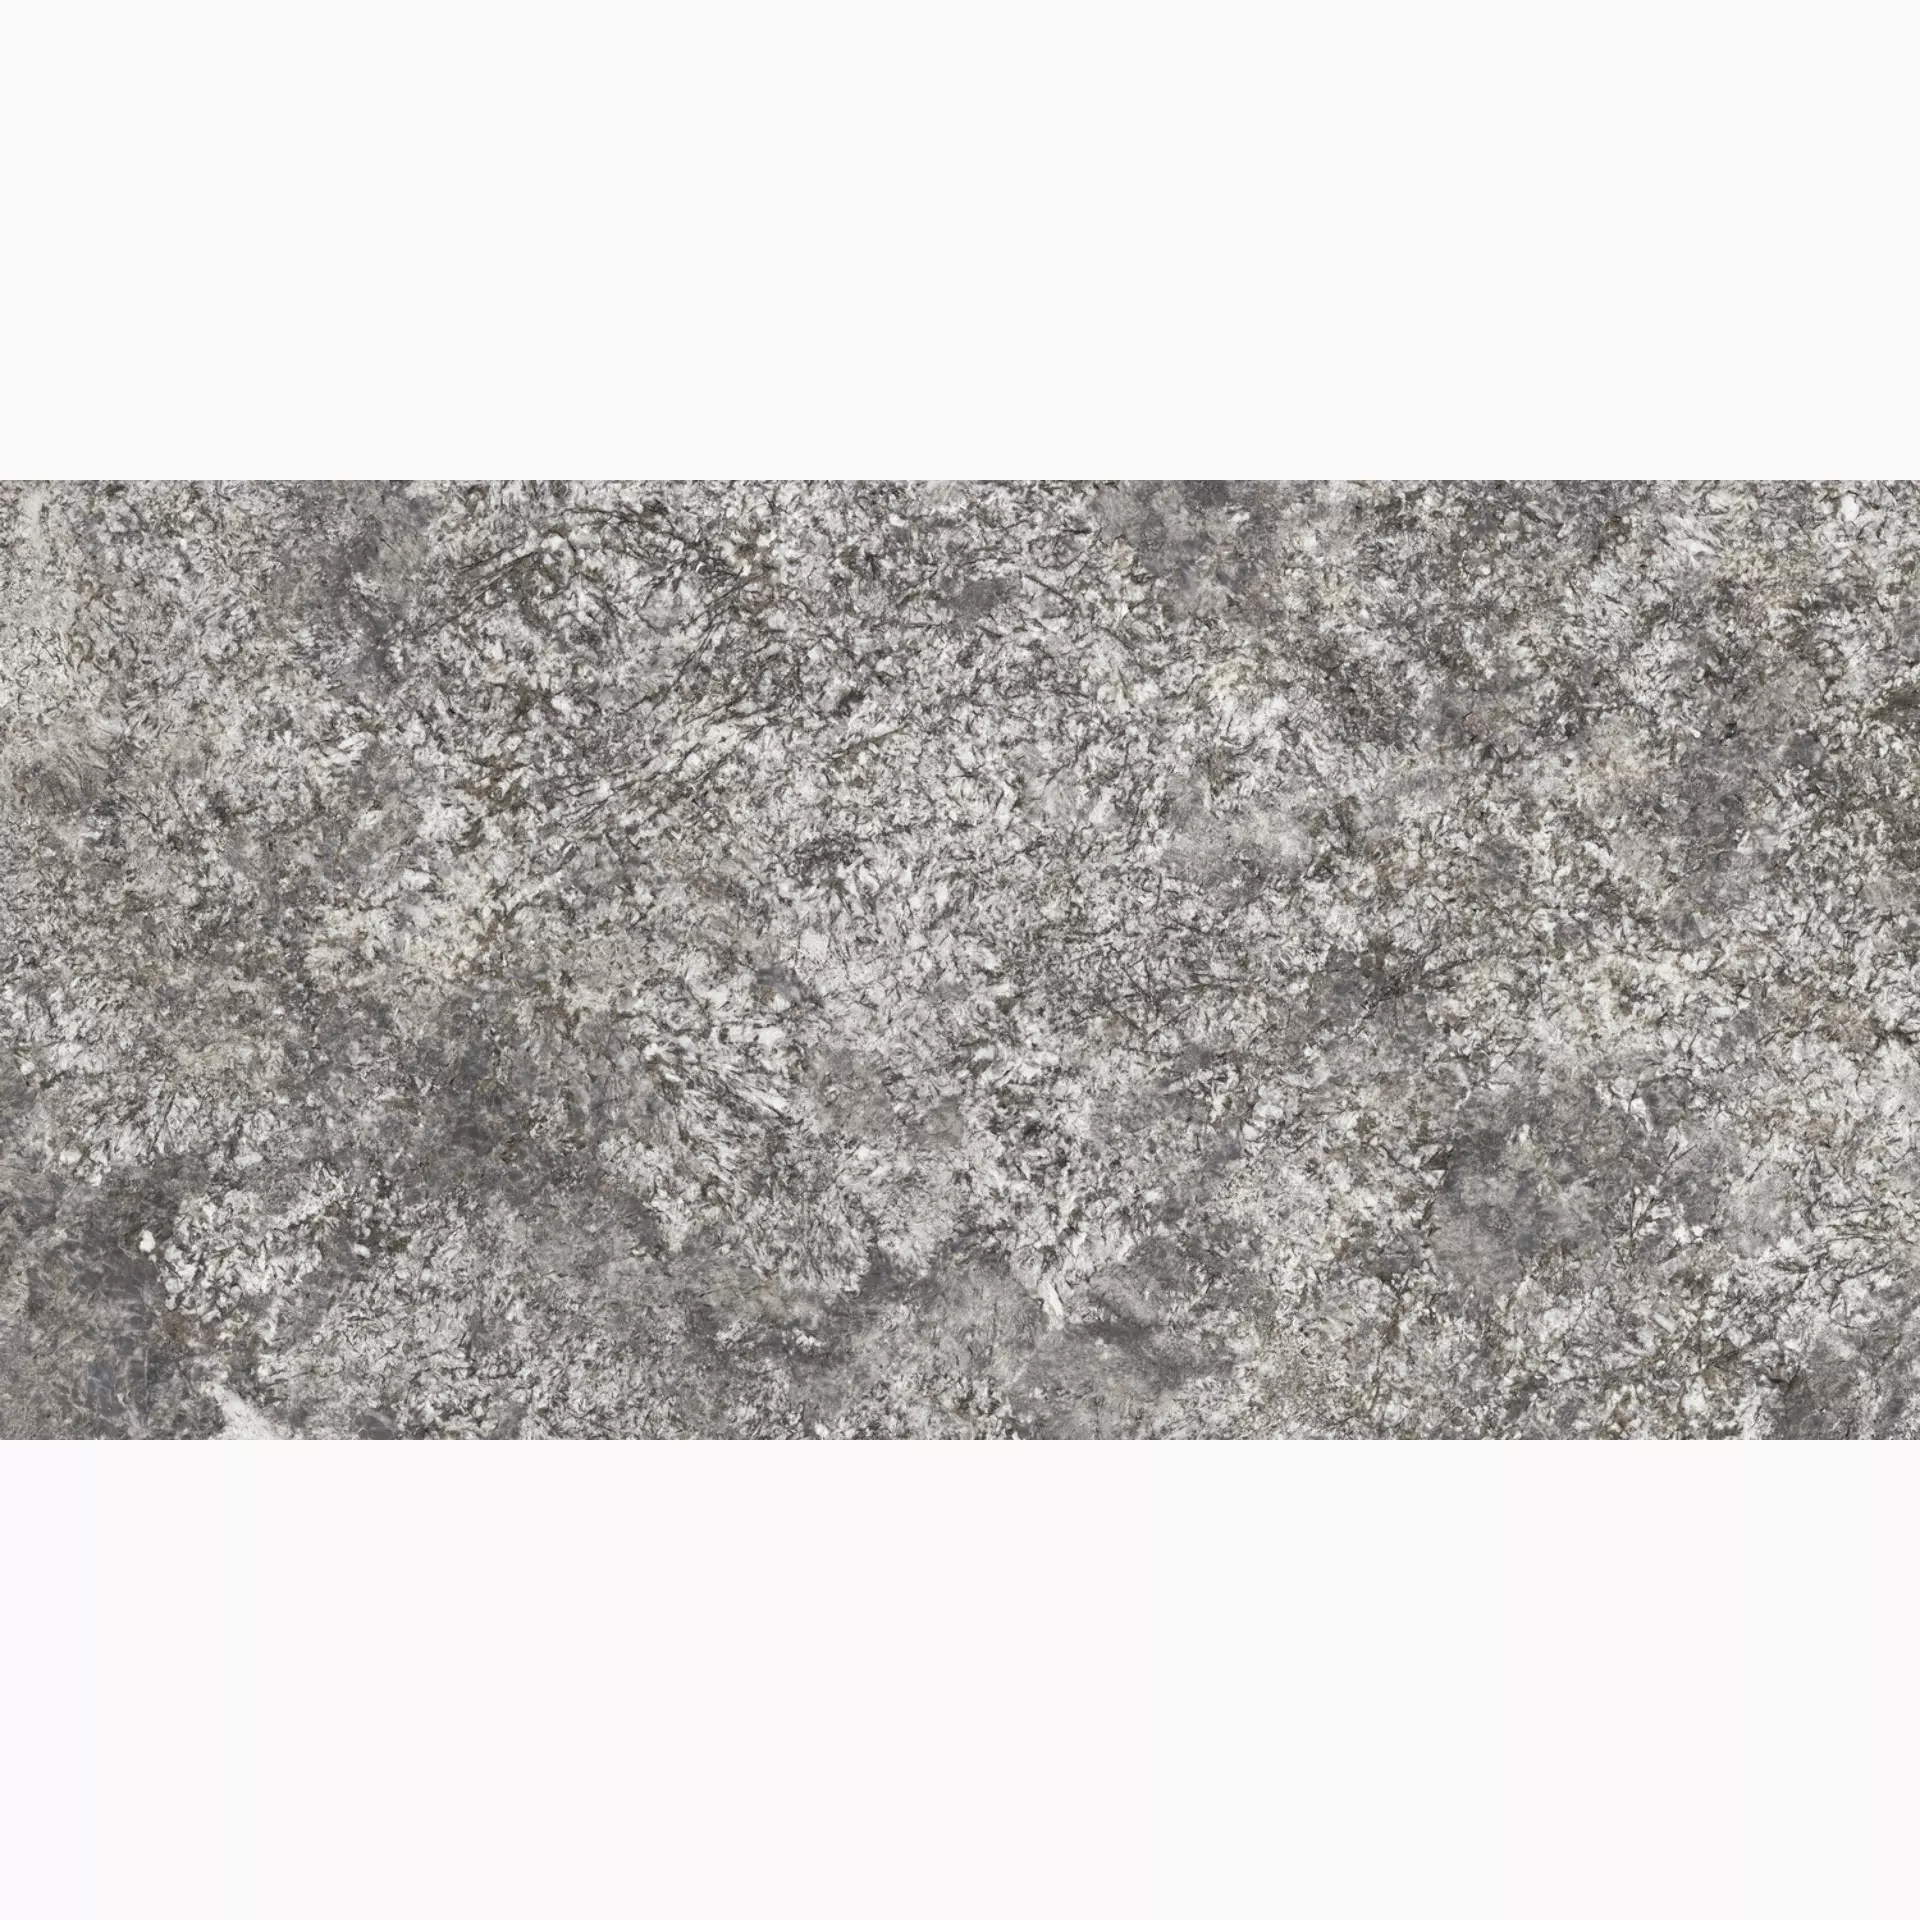 Maxfine Graniti Celeste Aran Lappato L175601MF6 75x150cm rectified 6mm